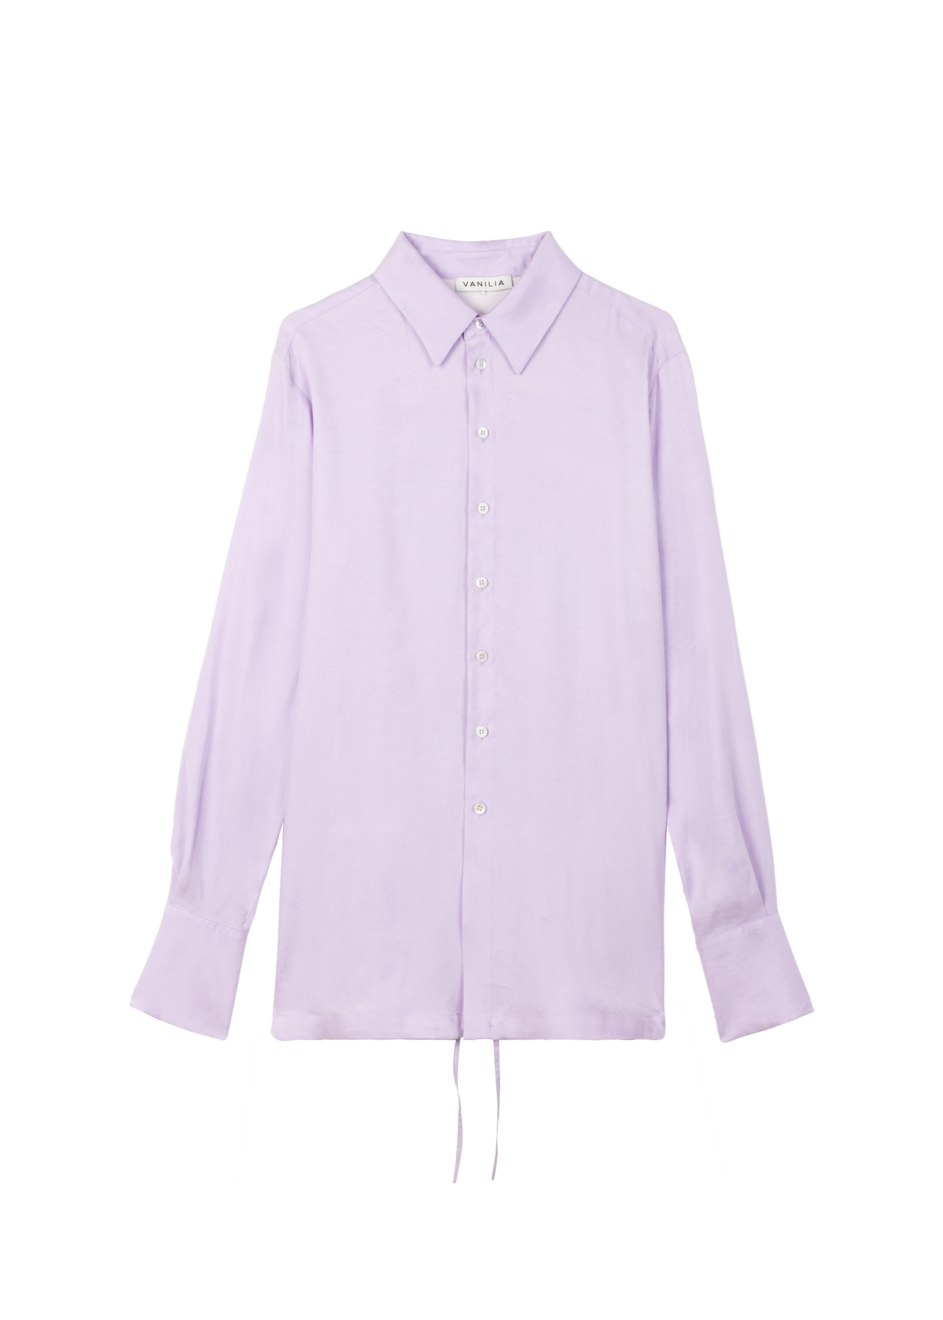 Aanbieding van Wrap tie lyocell blouse voor 154,95€ bij Vanilia